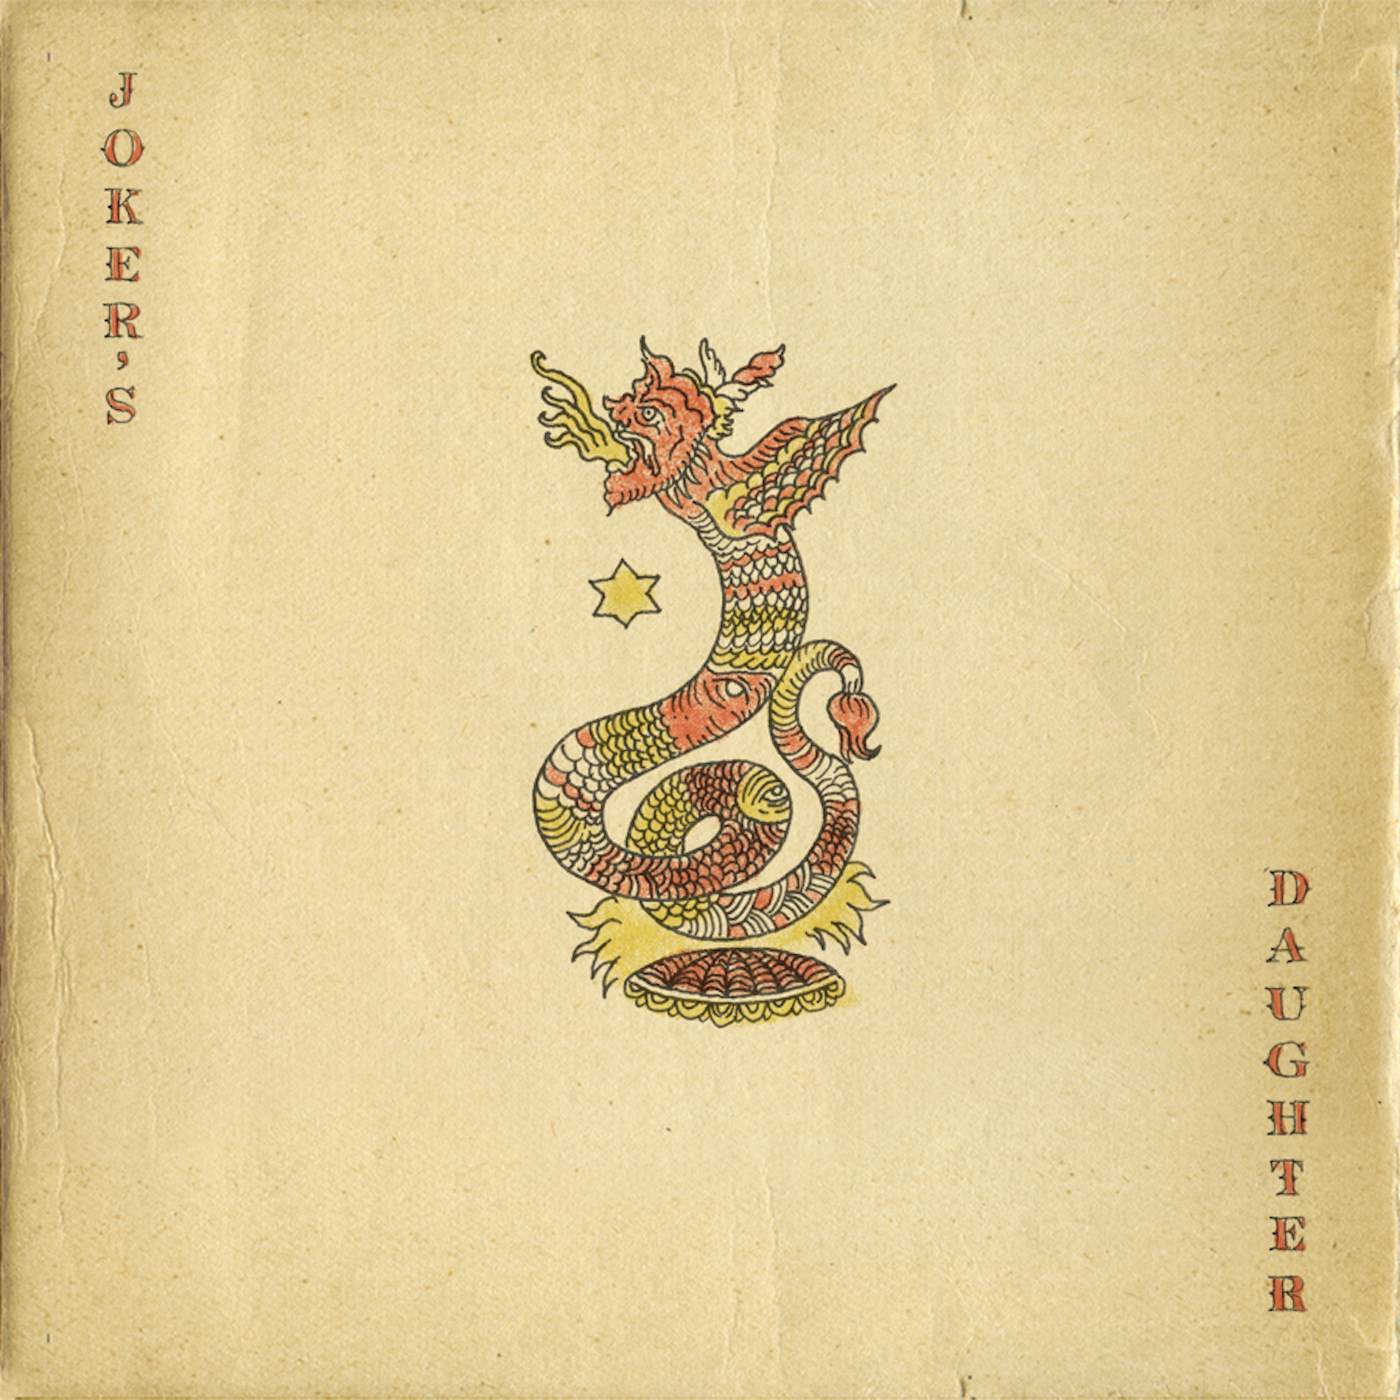 Joker's Daughter Worm's Head Vinyl Record